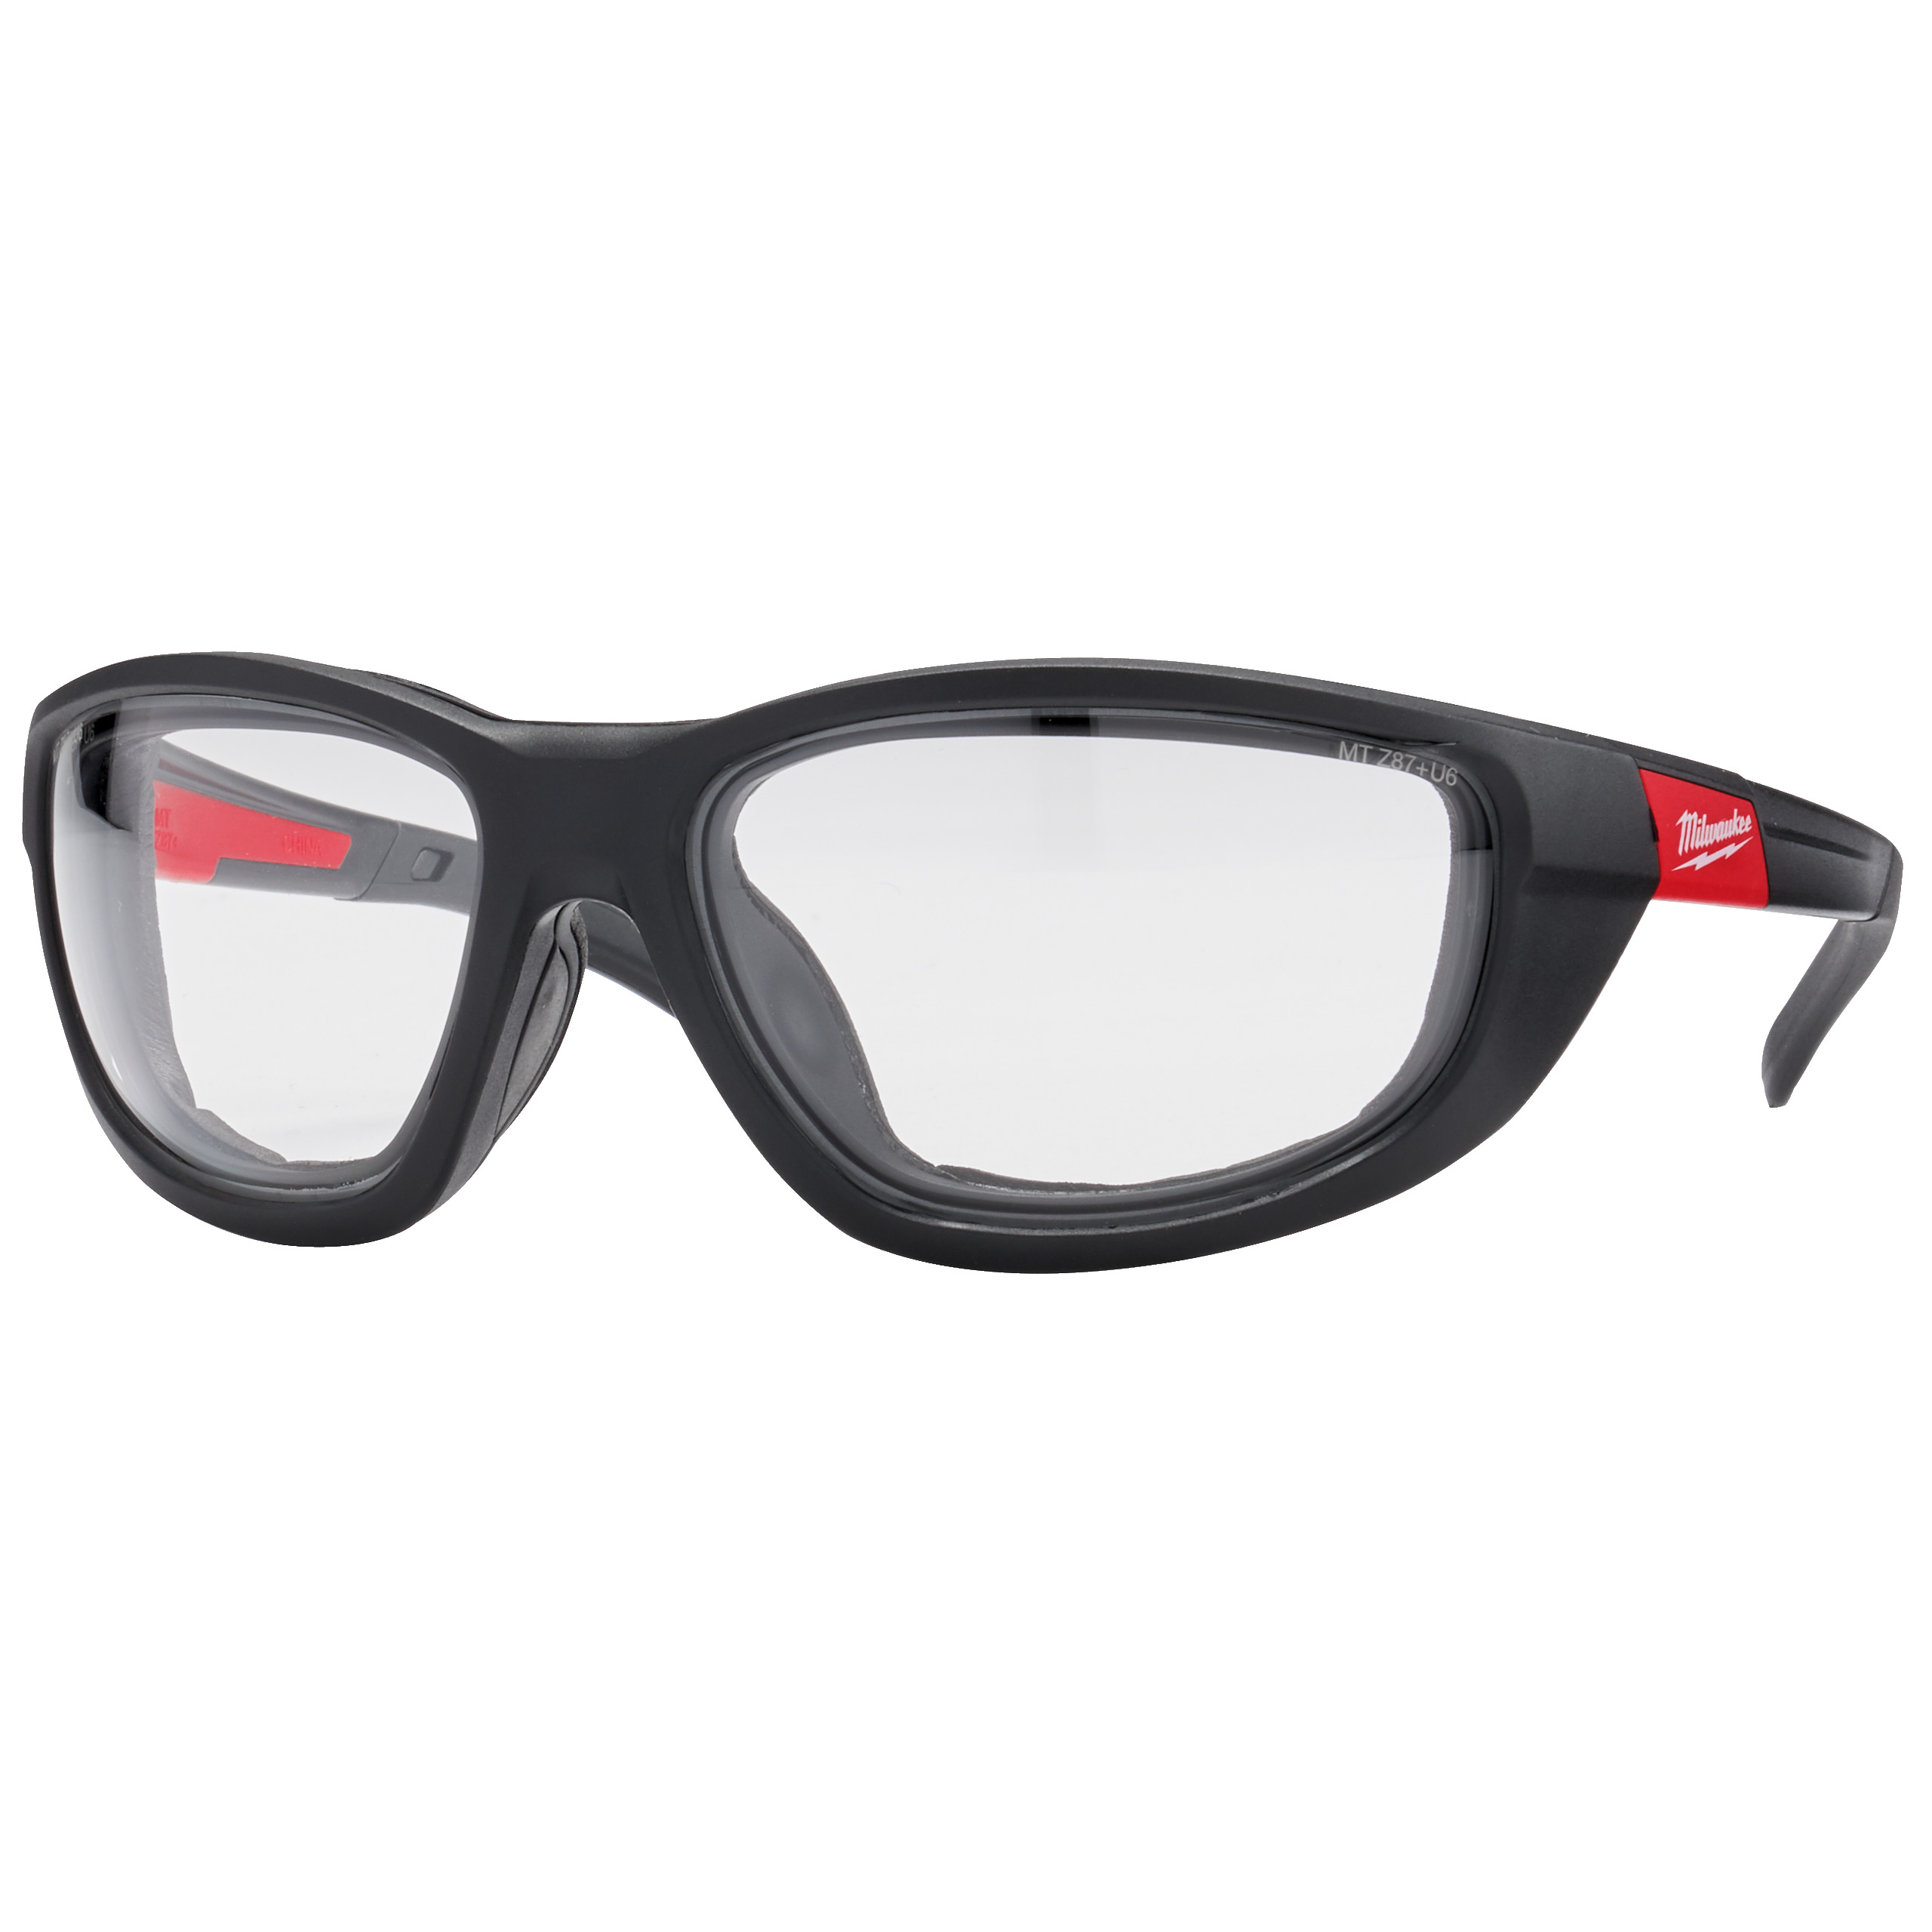 MILWAUKEE 4932471885 Vysoko výkonnostní ochranné brýle čiré s těsnící vložkou- 1ks